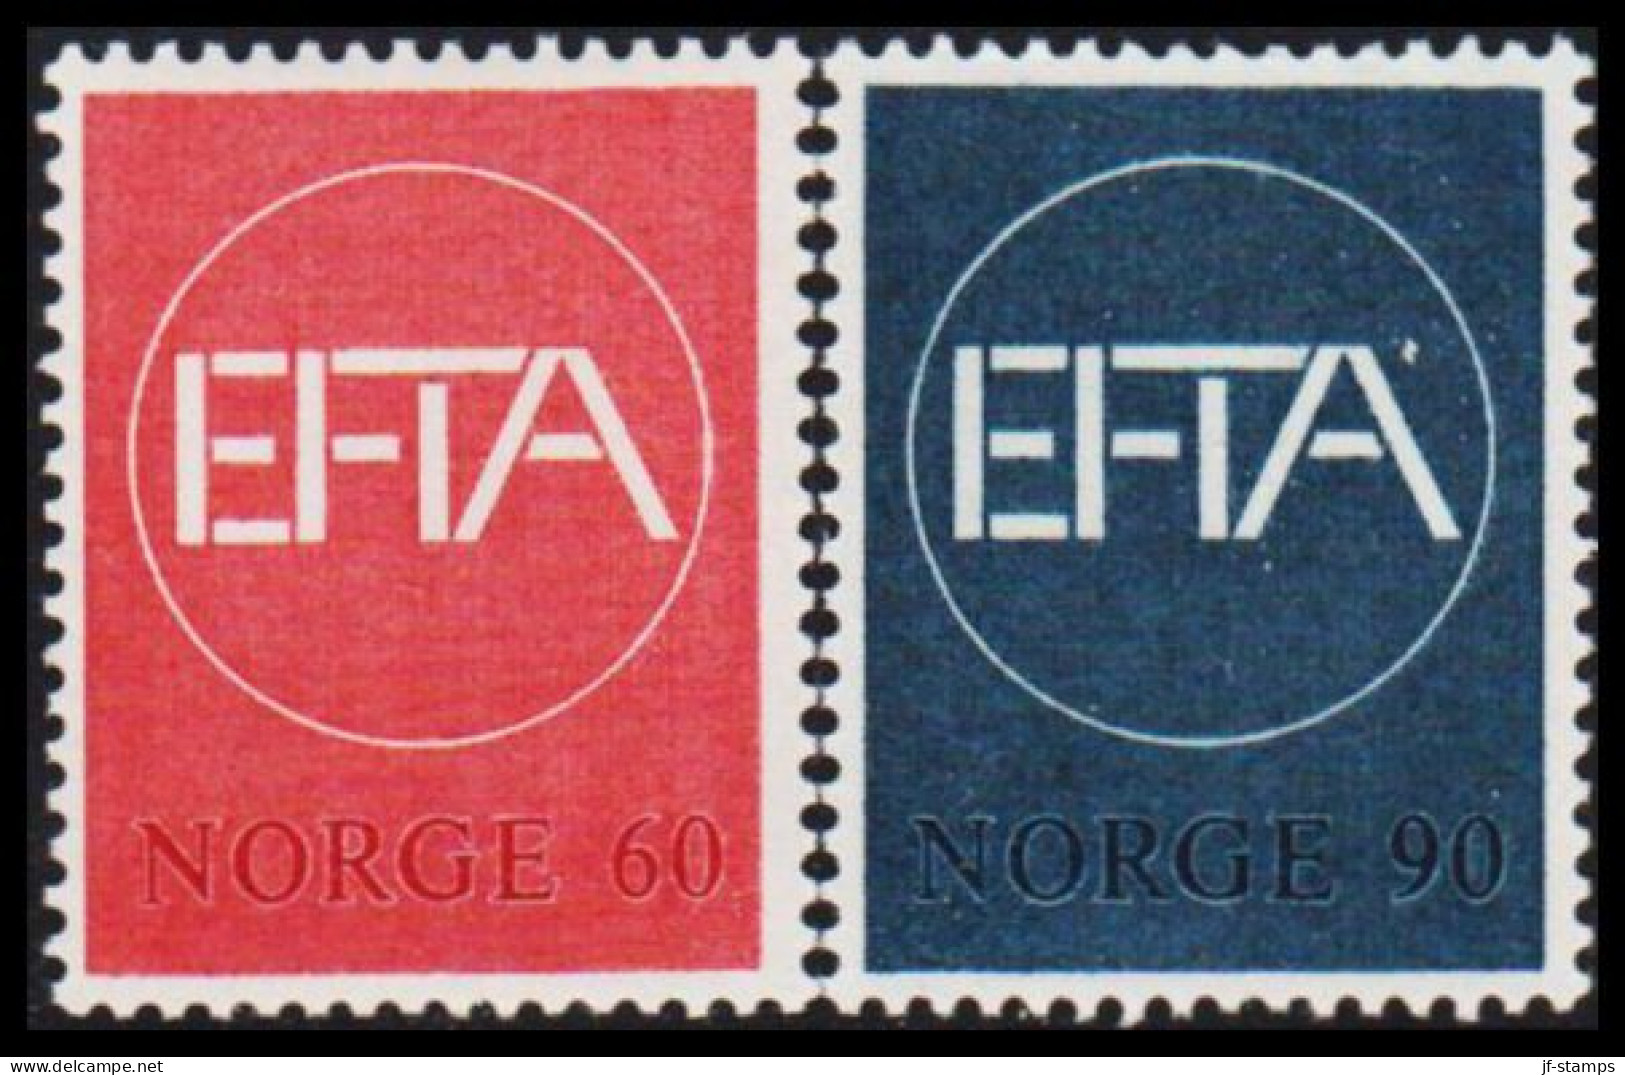 1967. NORGE. EFTA. Never Hinged Set.  (Michel 551552) - JF533390 - Briefe U. Dokumente